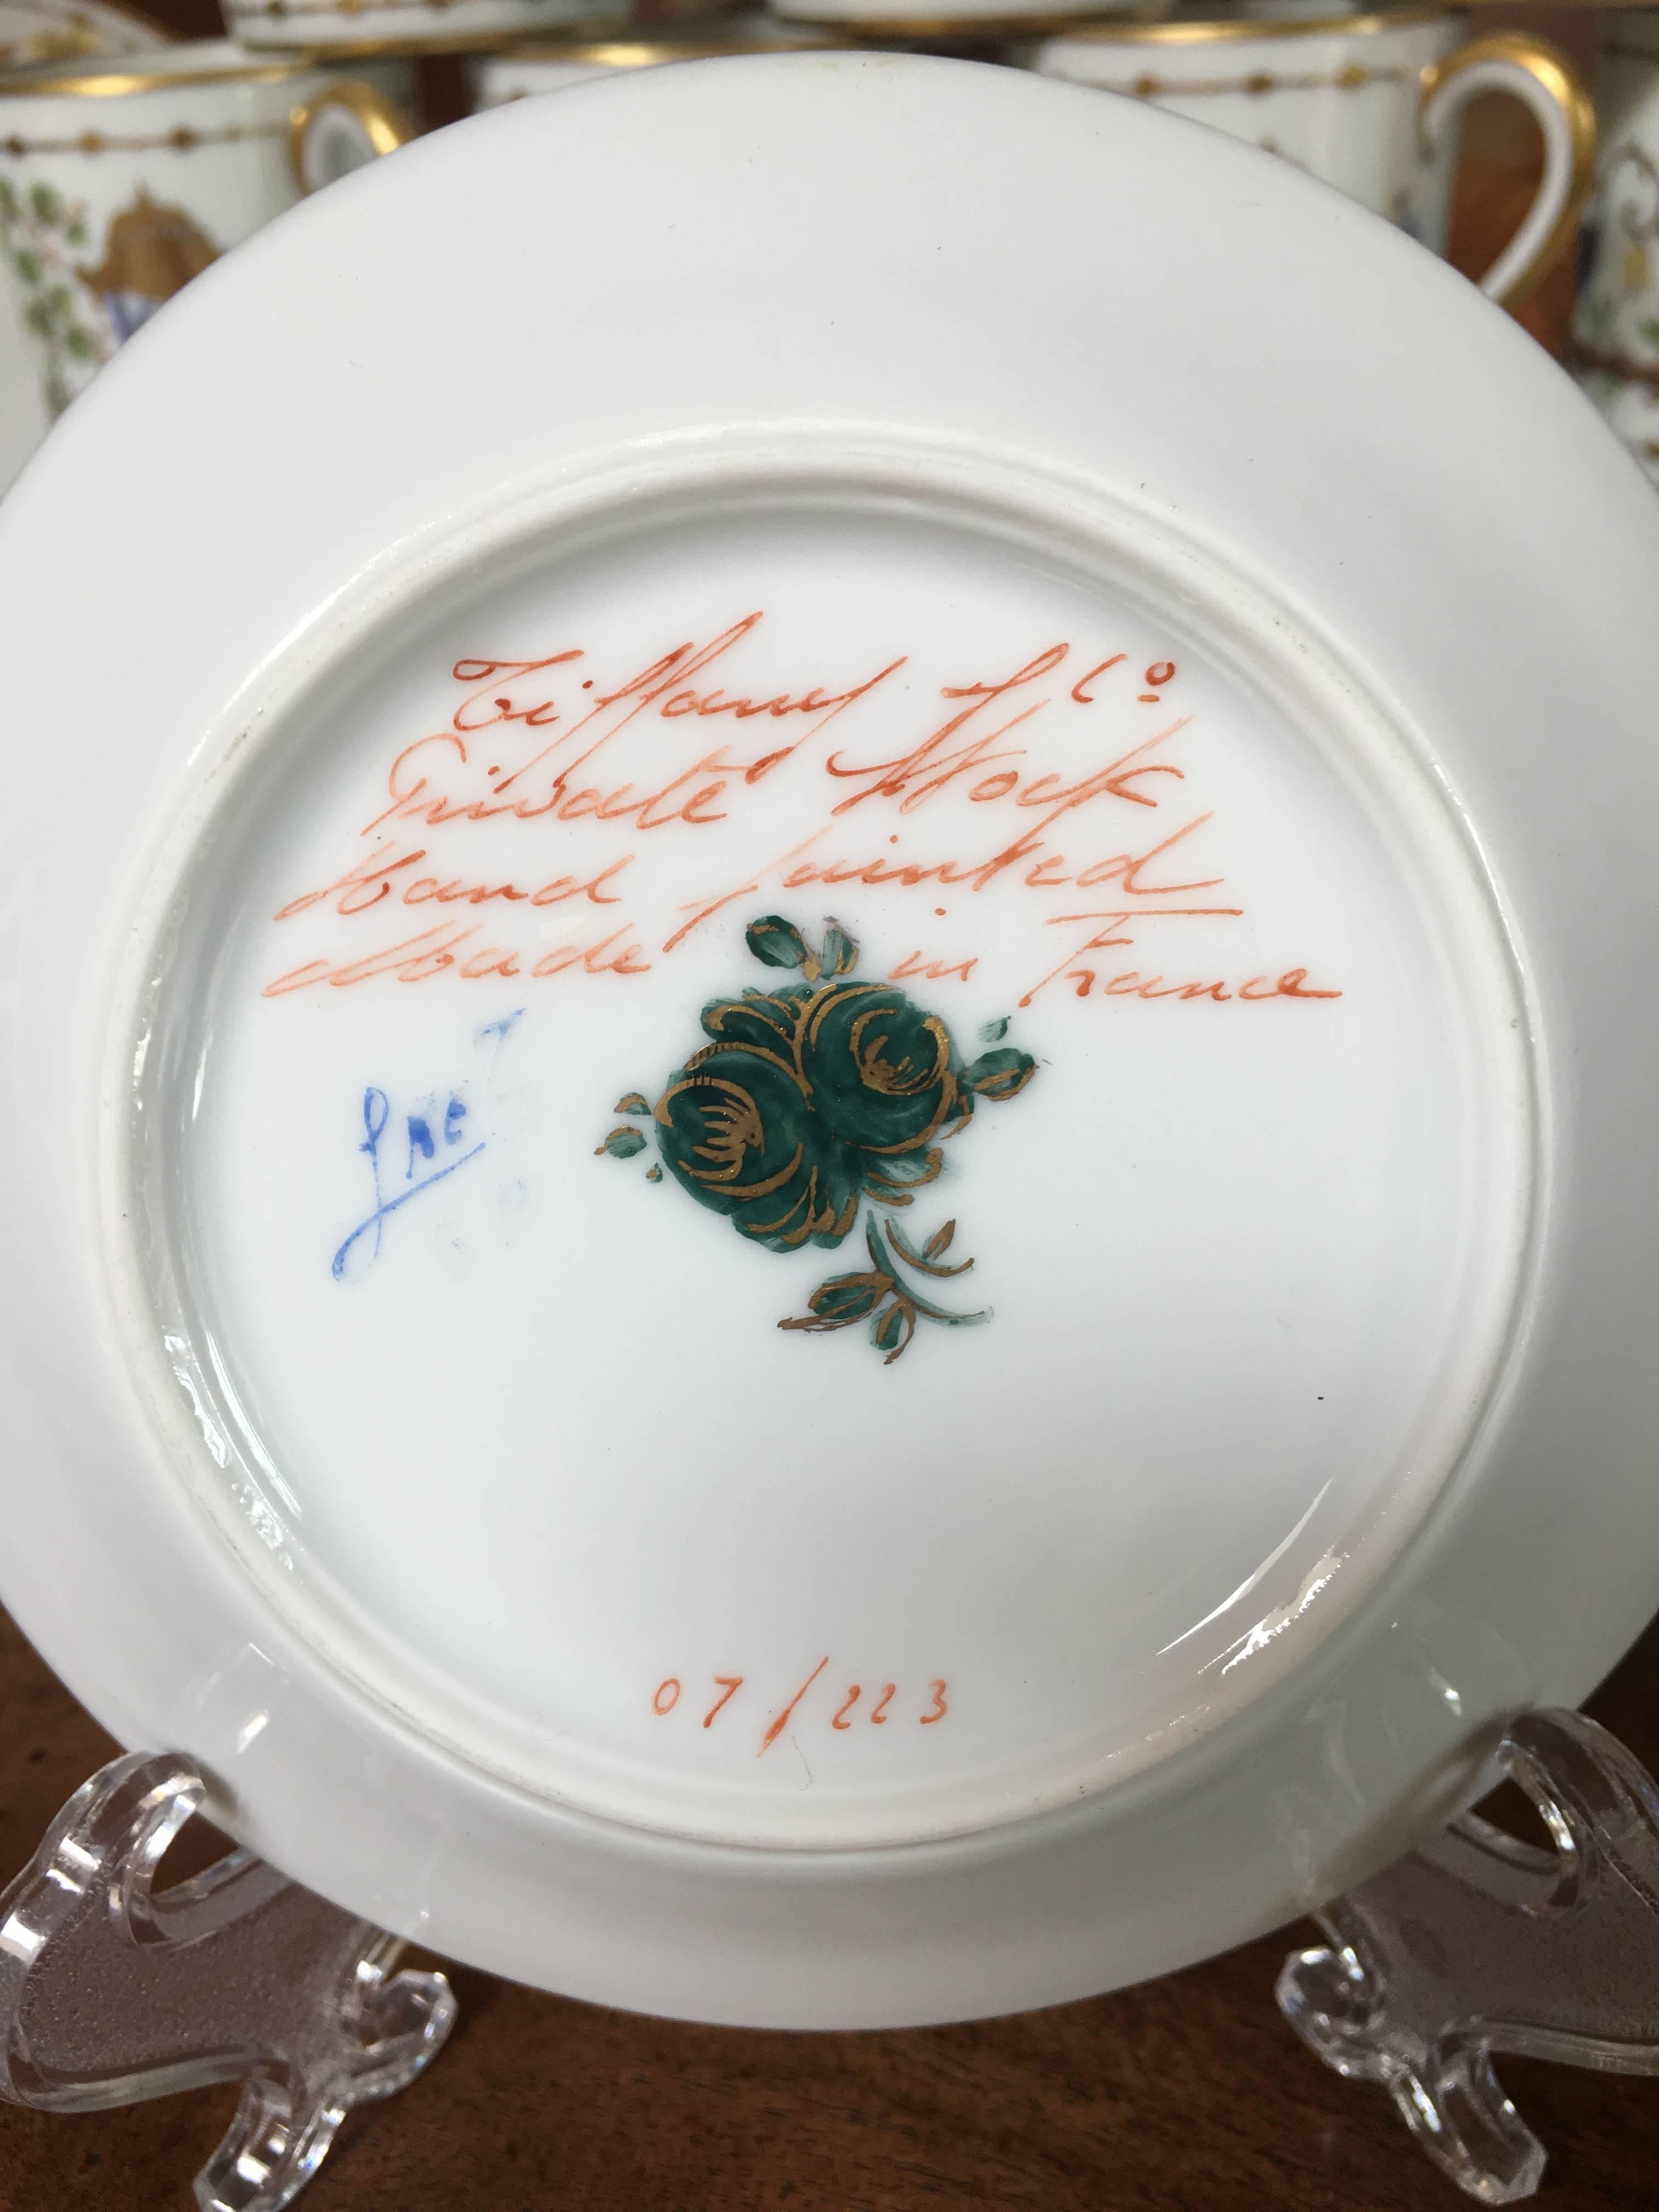 Fabriqué en porcelaine de Limoges:: ce motif peint à la main a été spécialement créé pour Tiffany & Co. par Camille Le Tallec. Le Tallec a été acheté par
Tiffany & Co. en 1990. Le Tallec a créé de la vaisselle en porcelaine peinte à la main pour
des